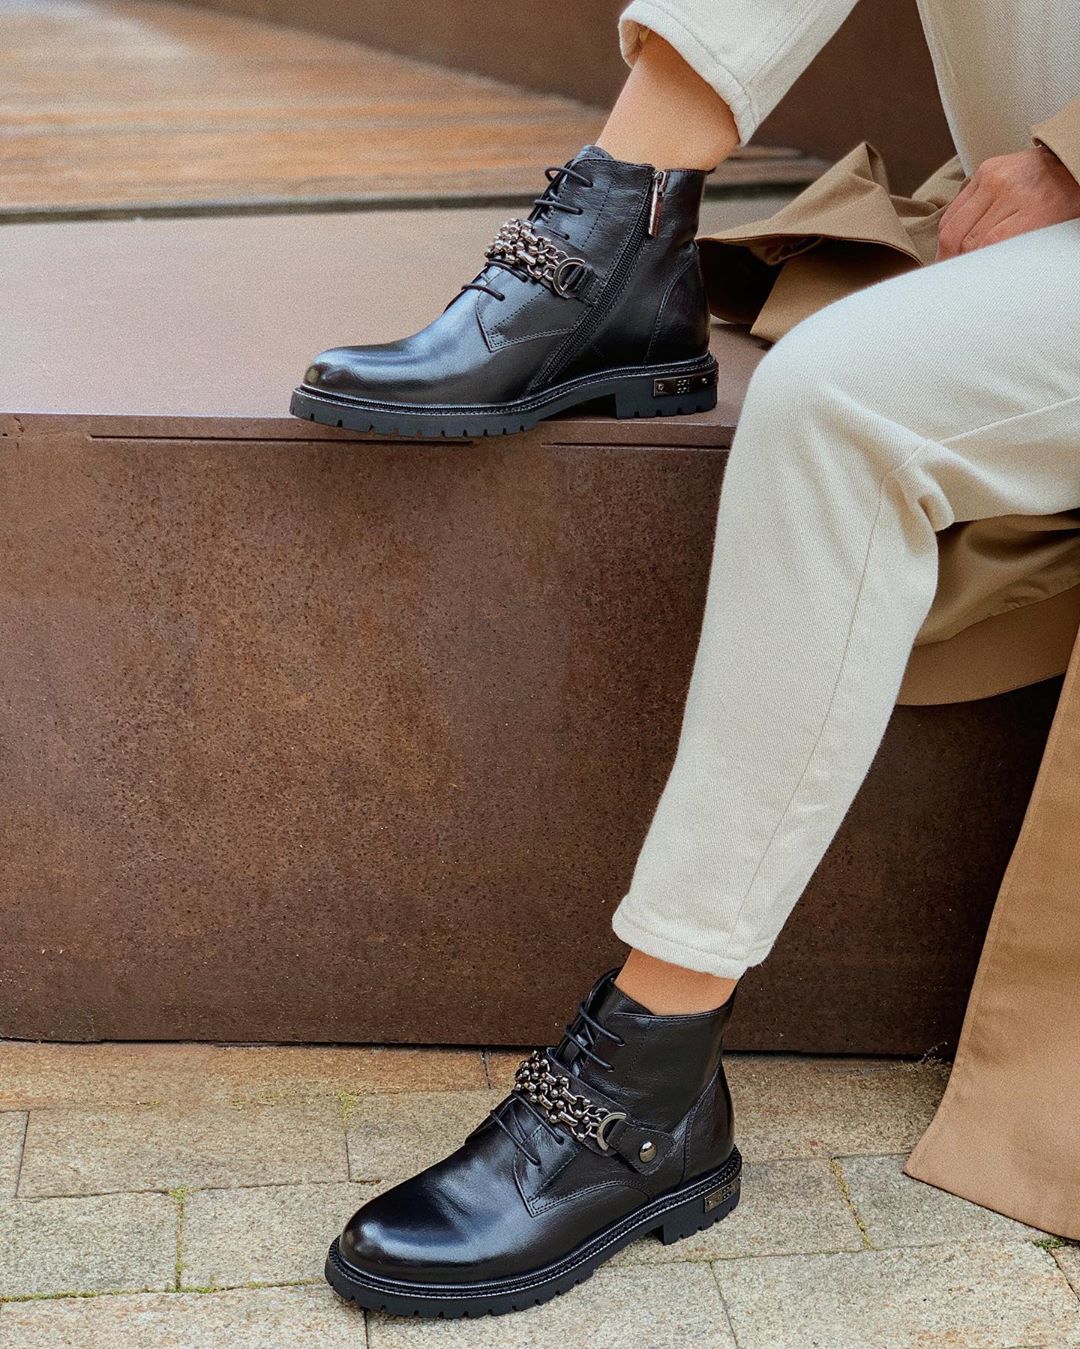 Mario Berluchi - Представляем вам новую осеннюю коллекцию🖤
————
На фото:
Ботинки
Натуральная кожа
Размеры: 36-40
Стоимость: 12690₽
Артикул: #2_5019